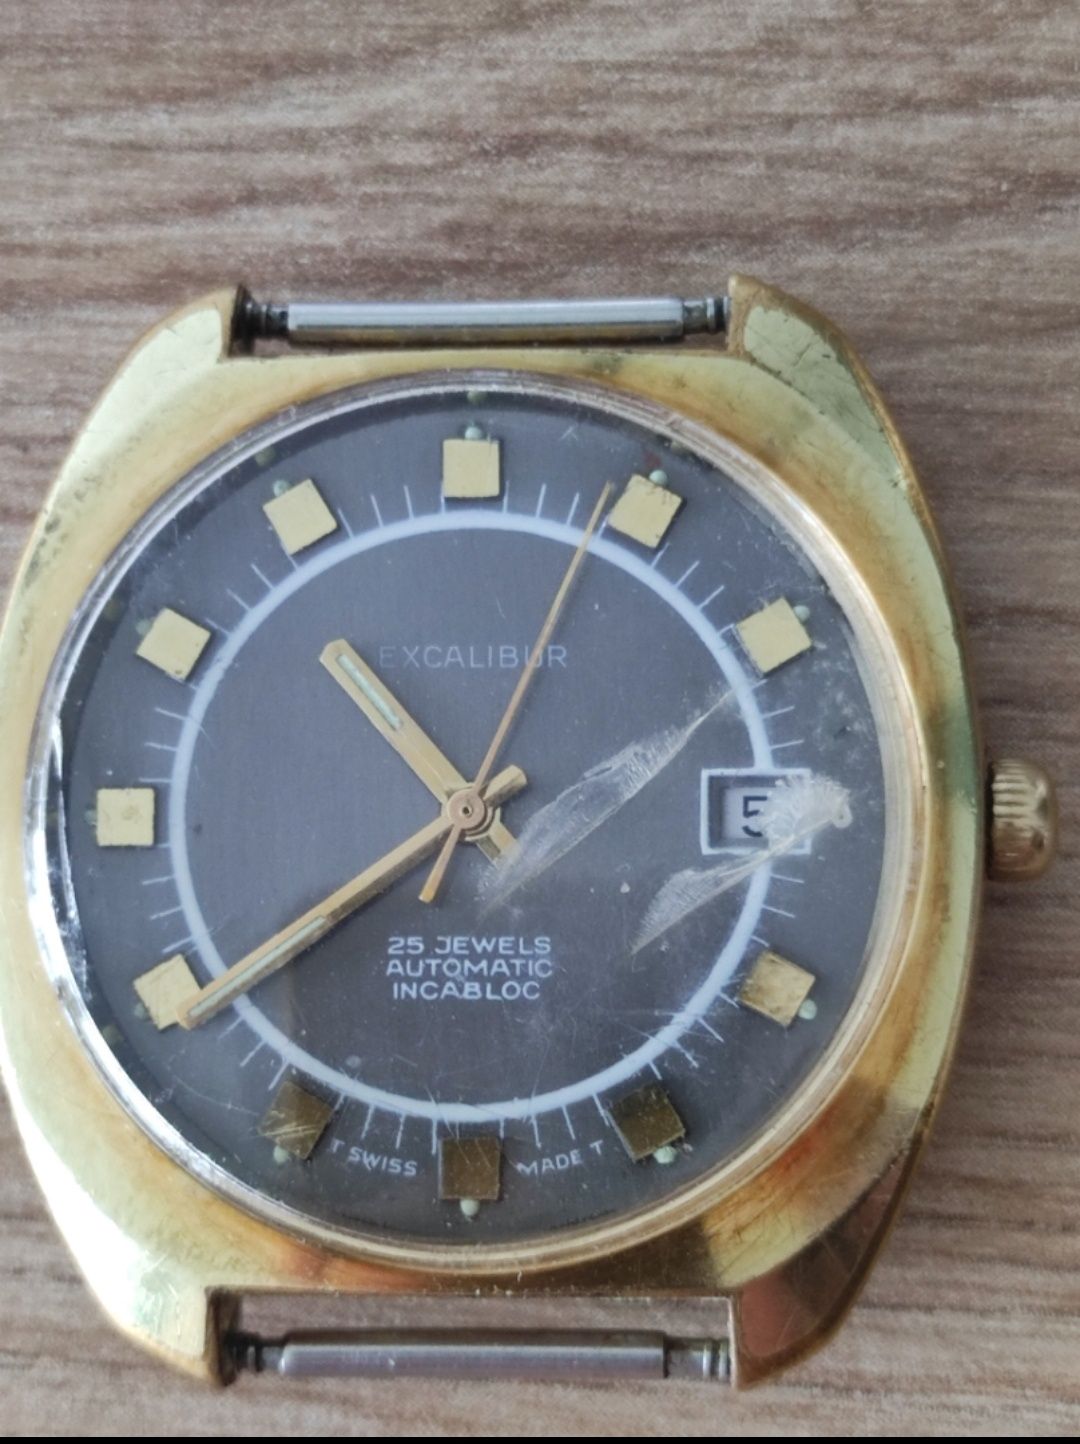 Vintage zegarek męski Excalibur Swiss made